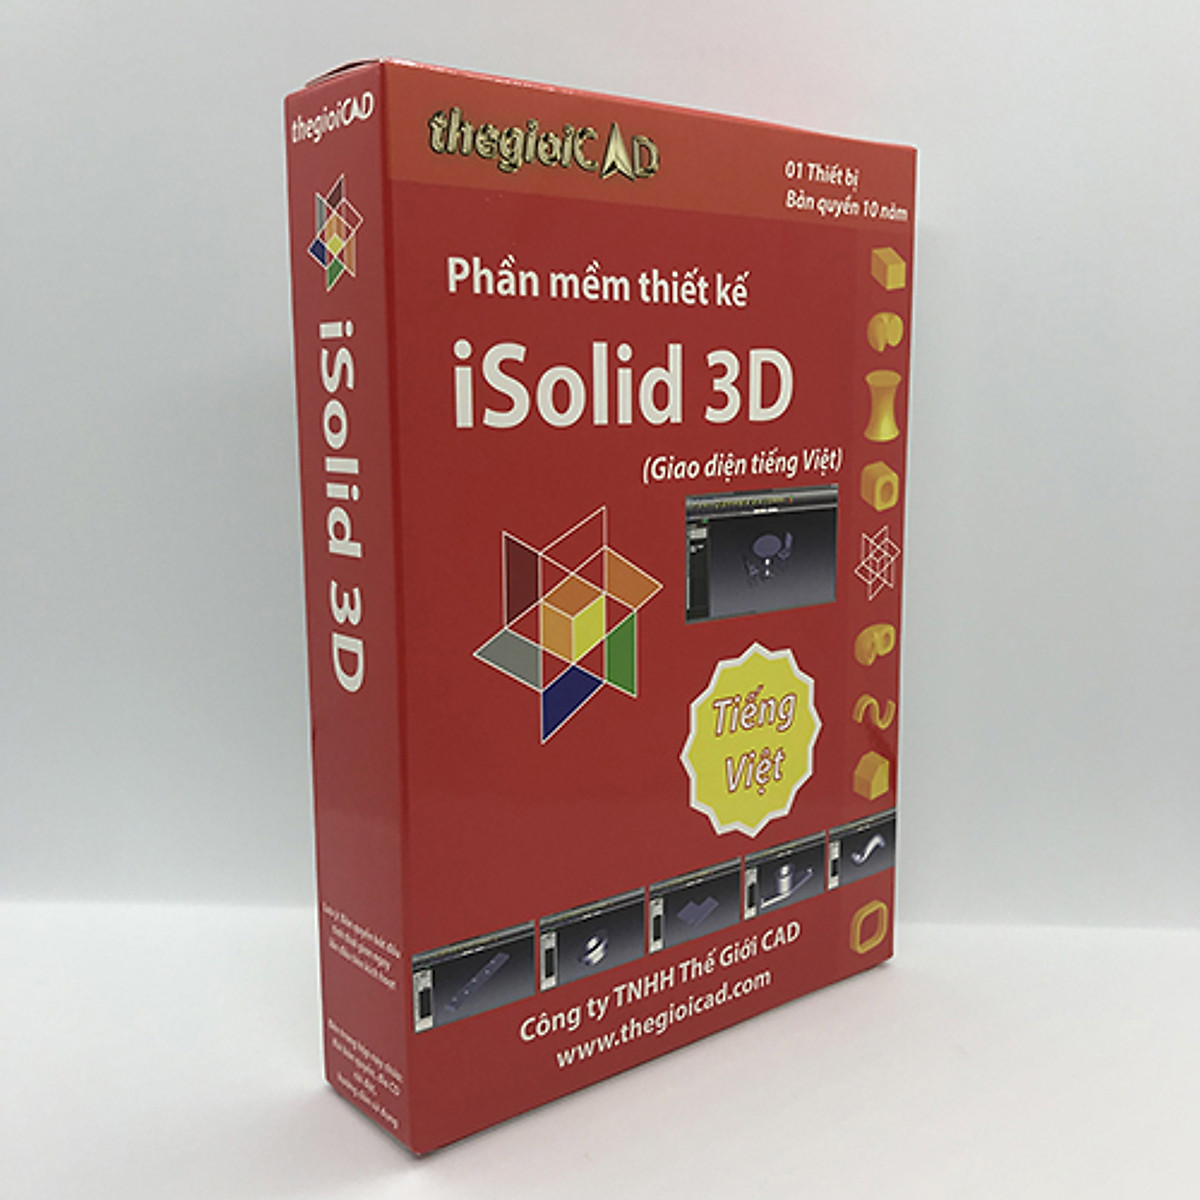 iSolid 3D là công cụ tuyệt vời dành cho các kỹ sư thiết kế, giúp họ tạo ra những mô hình 3D tuyệt đẹp và chân thực. Tận dụng iSolid 3D để nâng cao hiệu suất và sáng tạo của bạn ngay hôm nay.